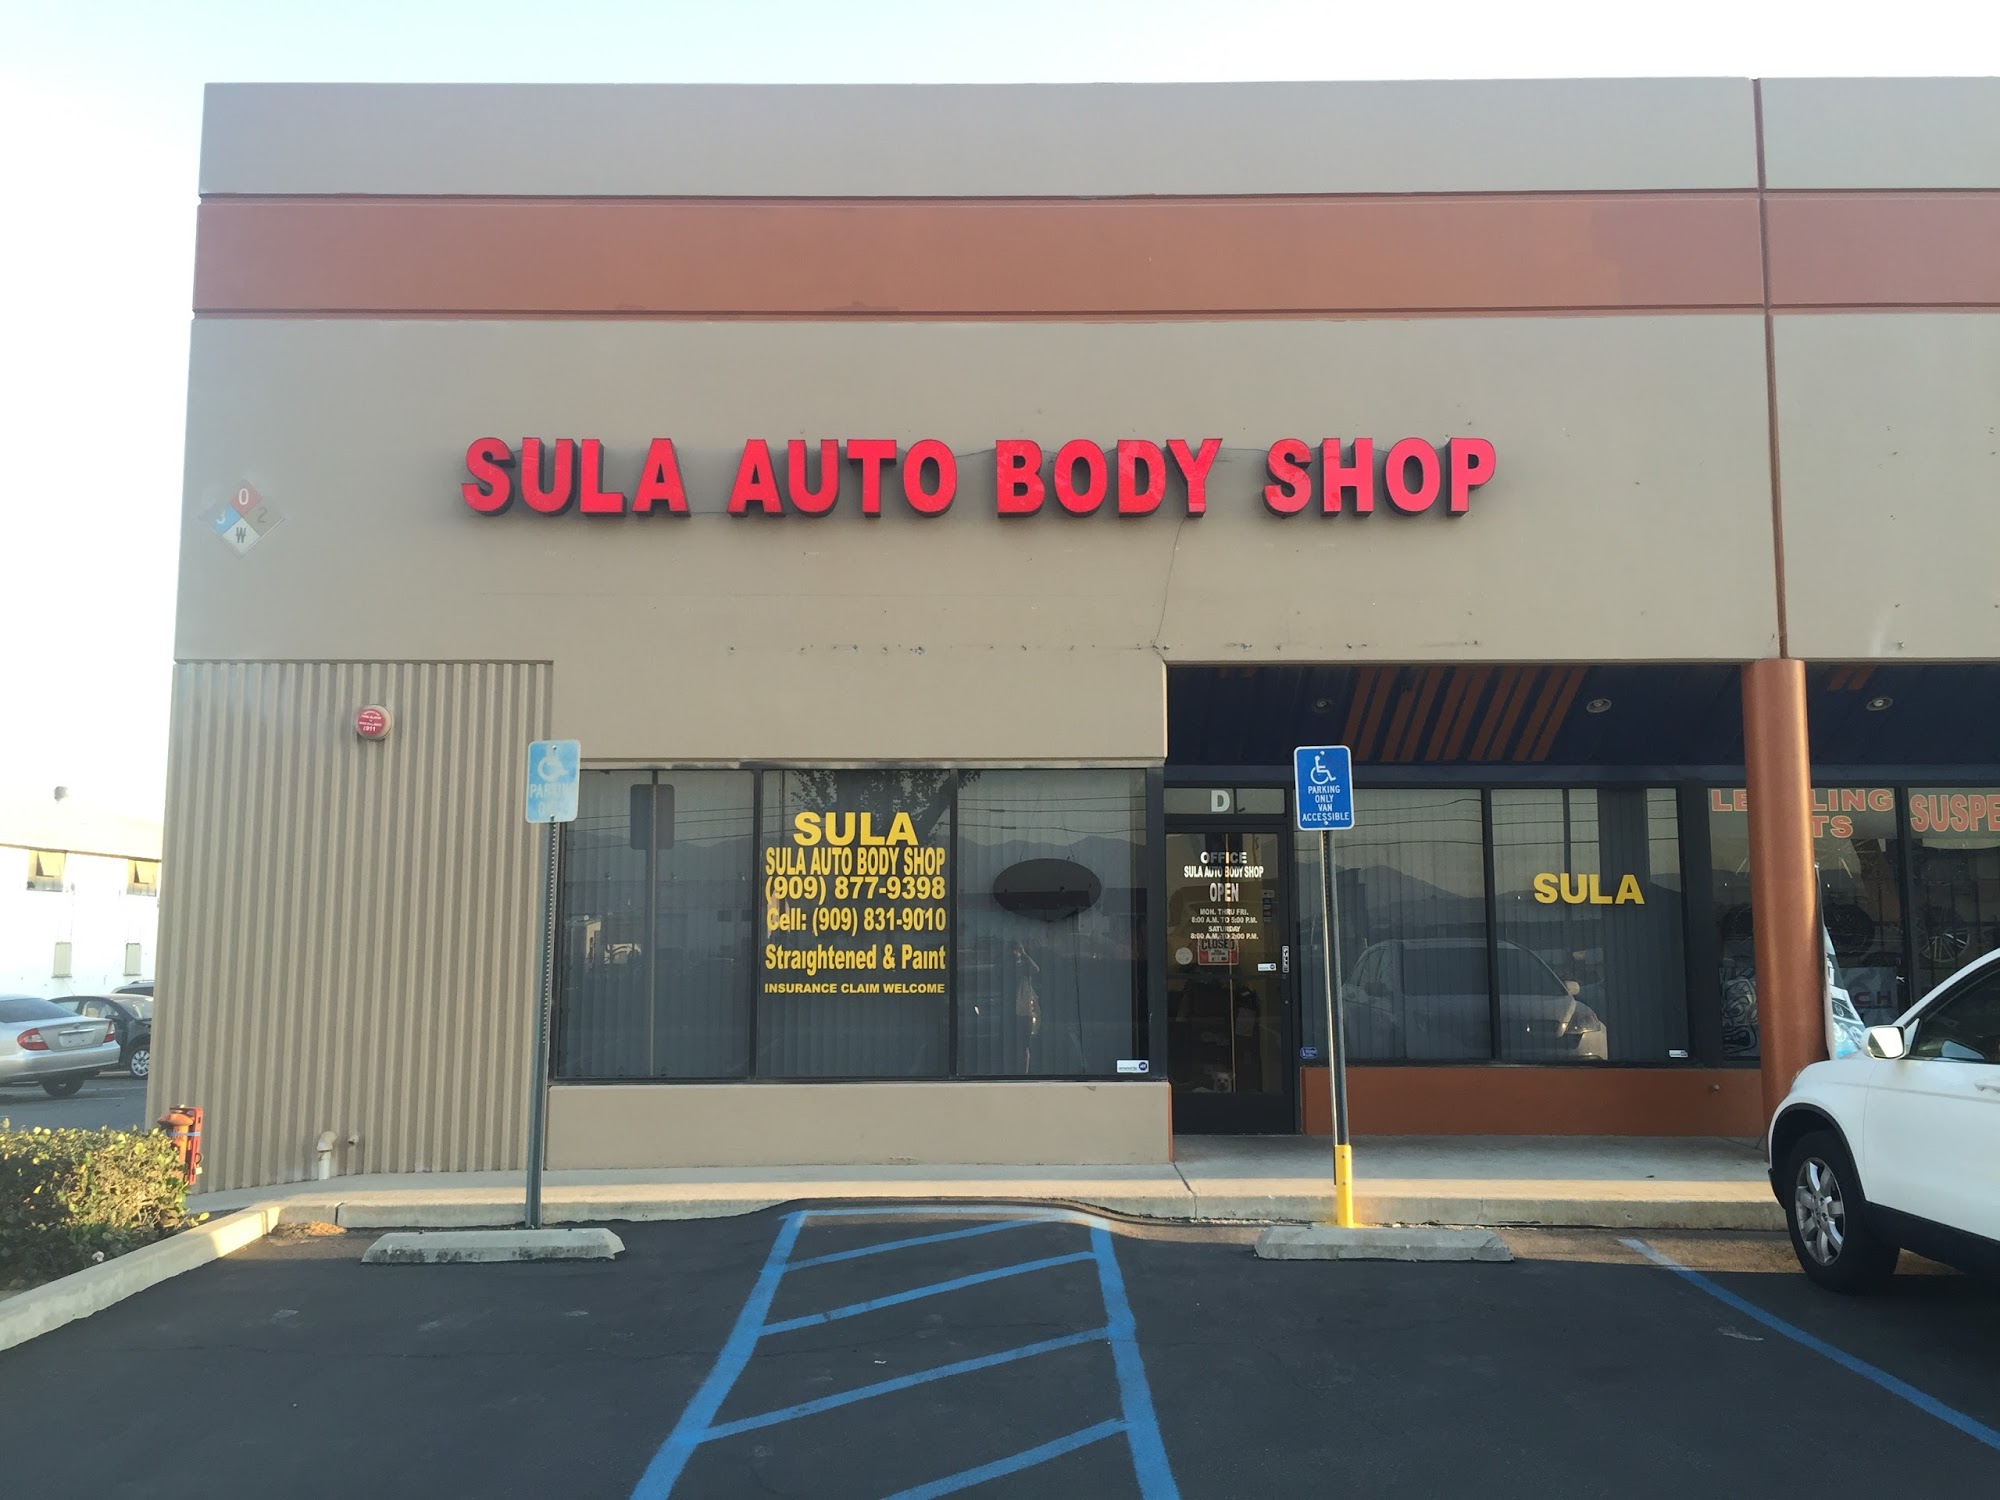 Sula Auto Body Shop